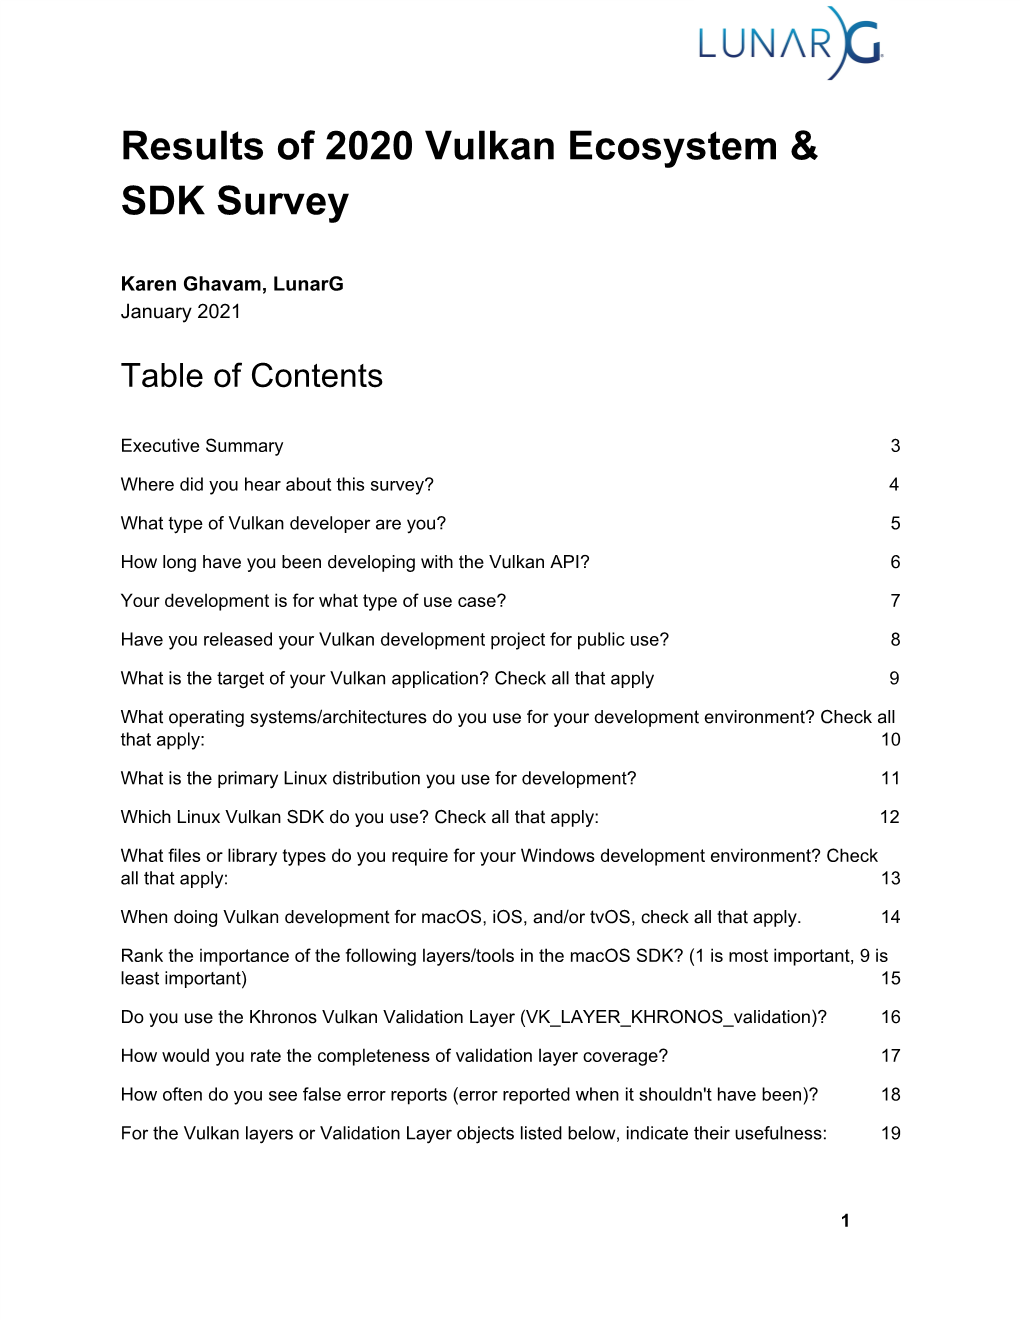 Results of 2020 Vulkan Ecosystem & SDK Survey​